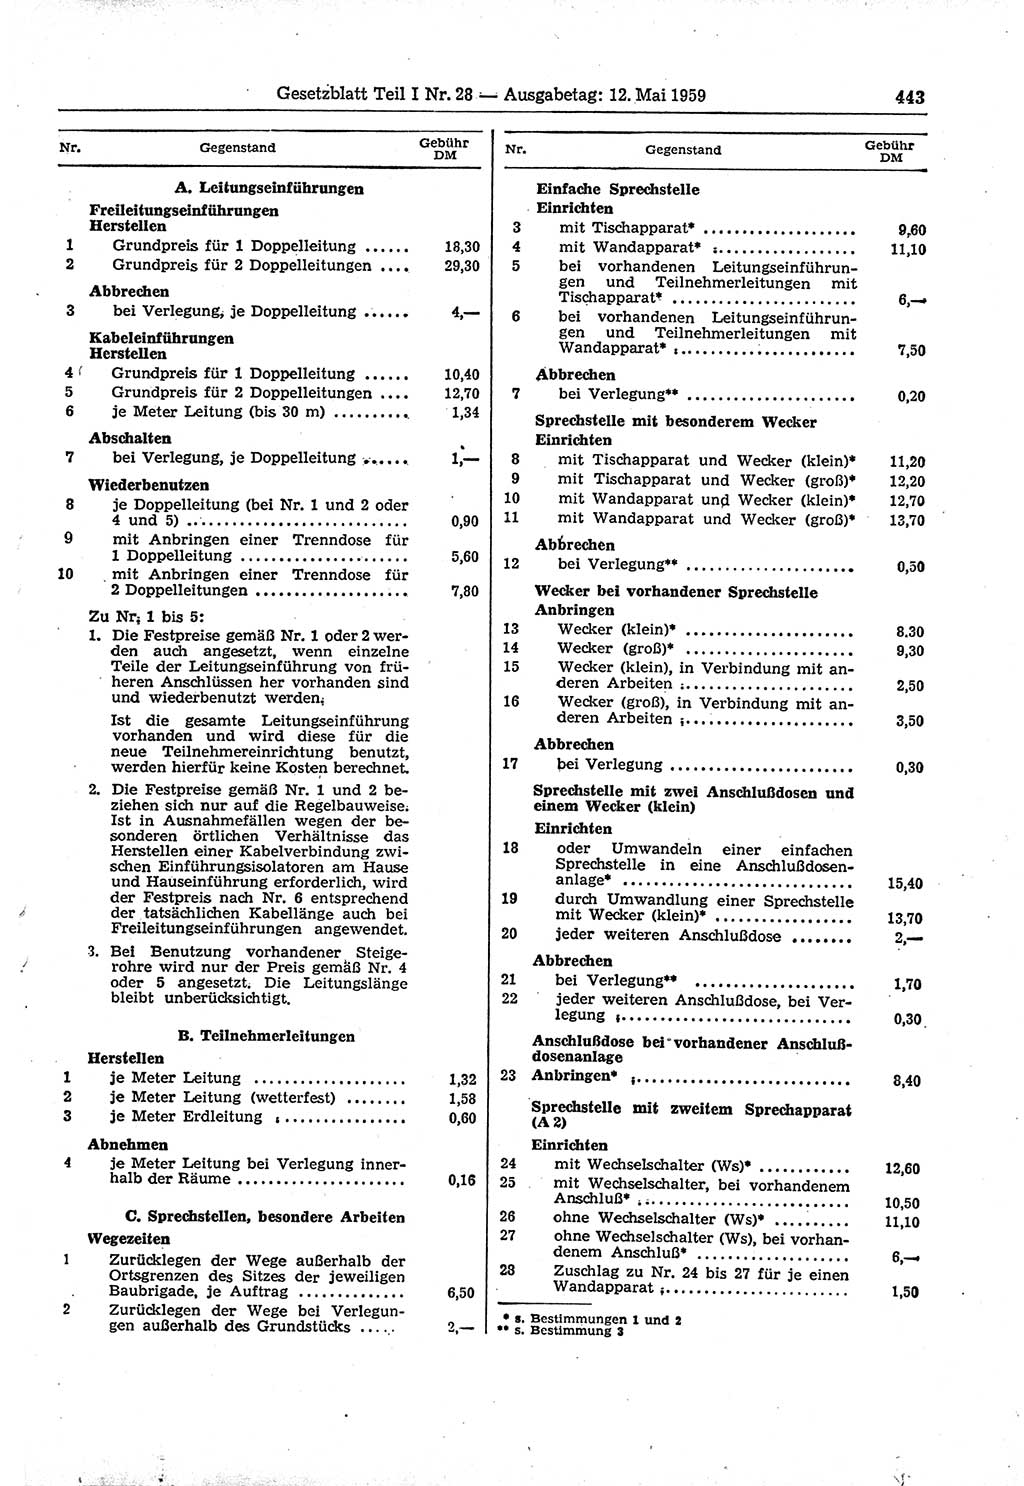 Gesetzblatt (GBl.) der Deutschen Demokratischen Republik (DDR) Teil Ⅰ 1959, Seite 443 (GBl. DDR Ⅰ 1959, S. 443)